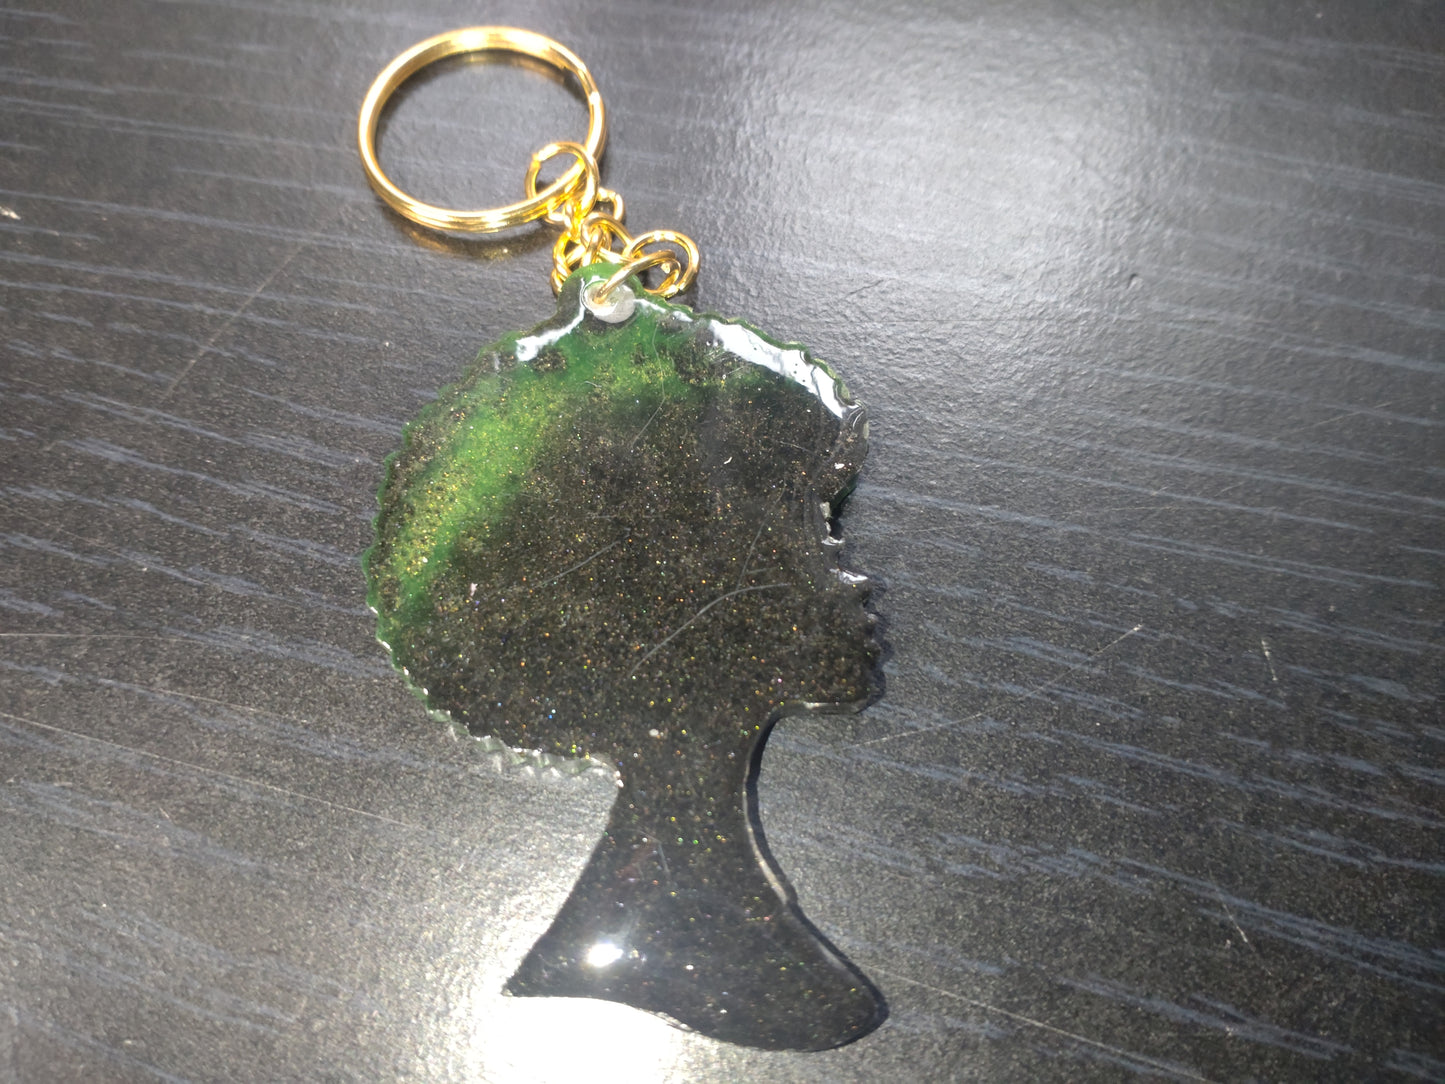 Afro Girl Keyring Green